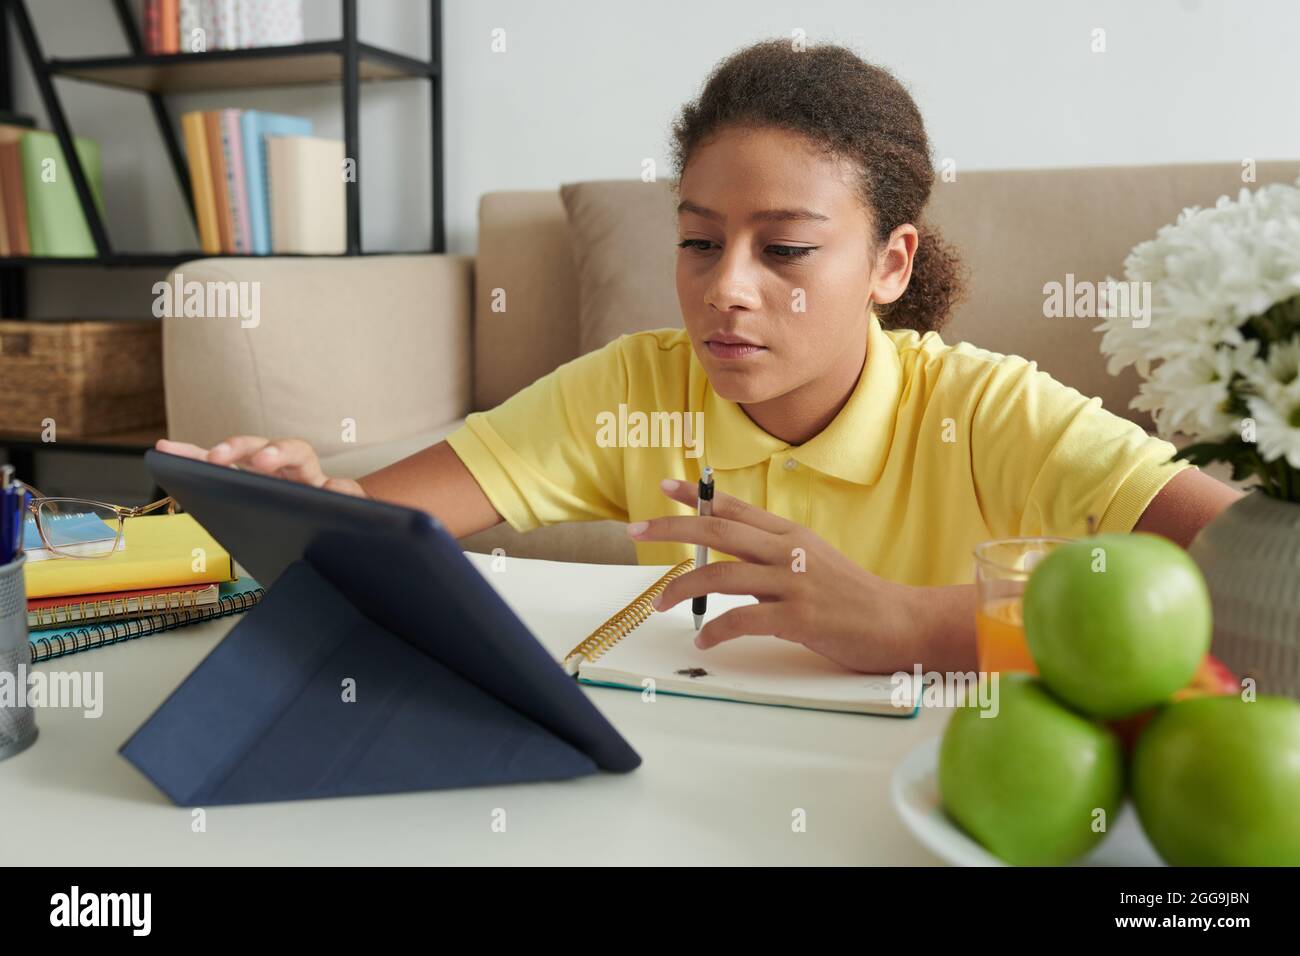 Ernsthaftes Teenager-Mädchen, das Online-Kurs besucht, Videos auf einem Tablet-Computer ansieht und sich Notizen zu Lehrbüchern macht Stockfoto